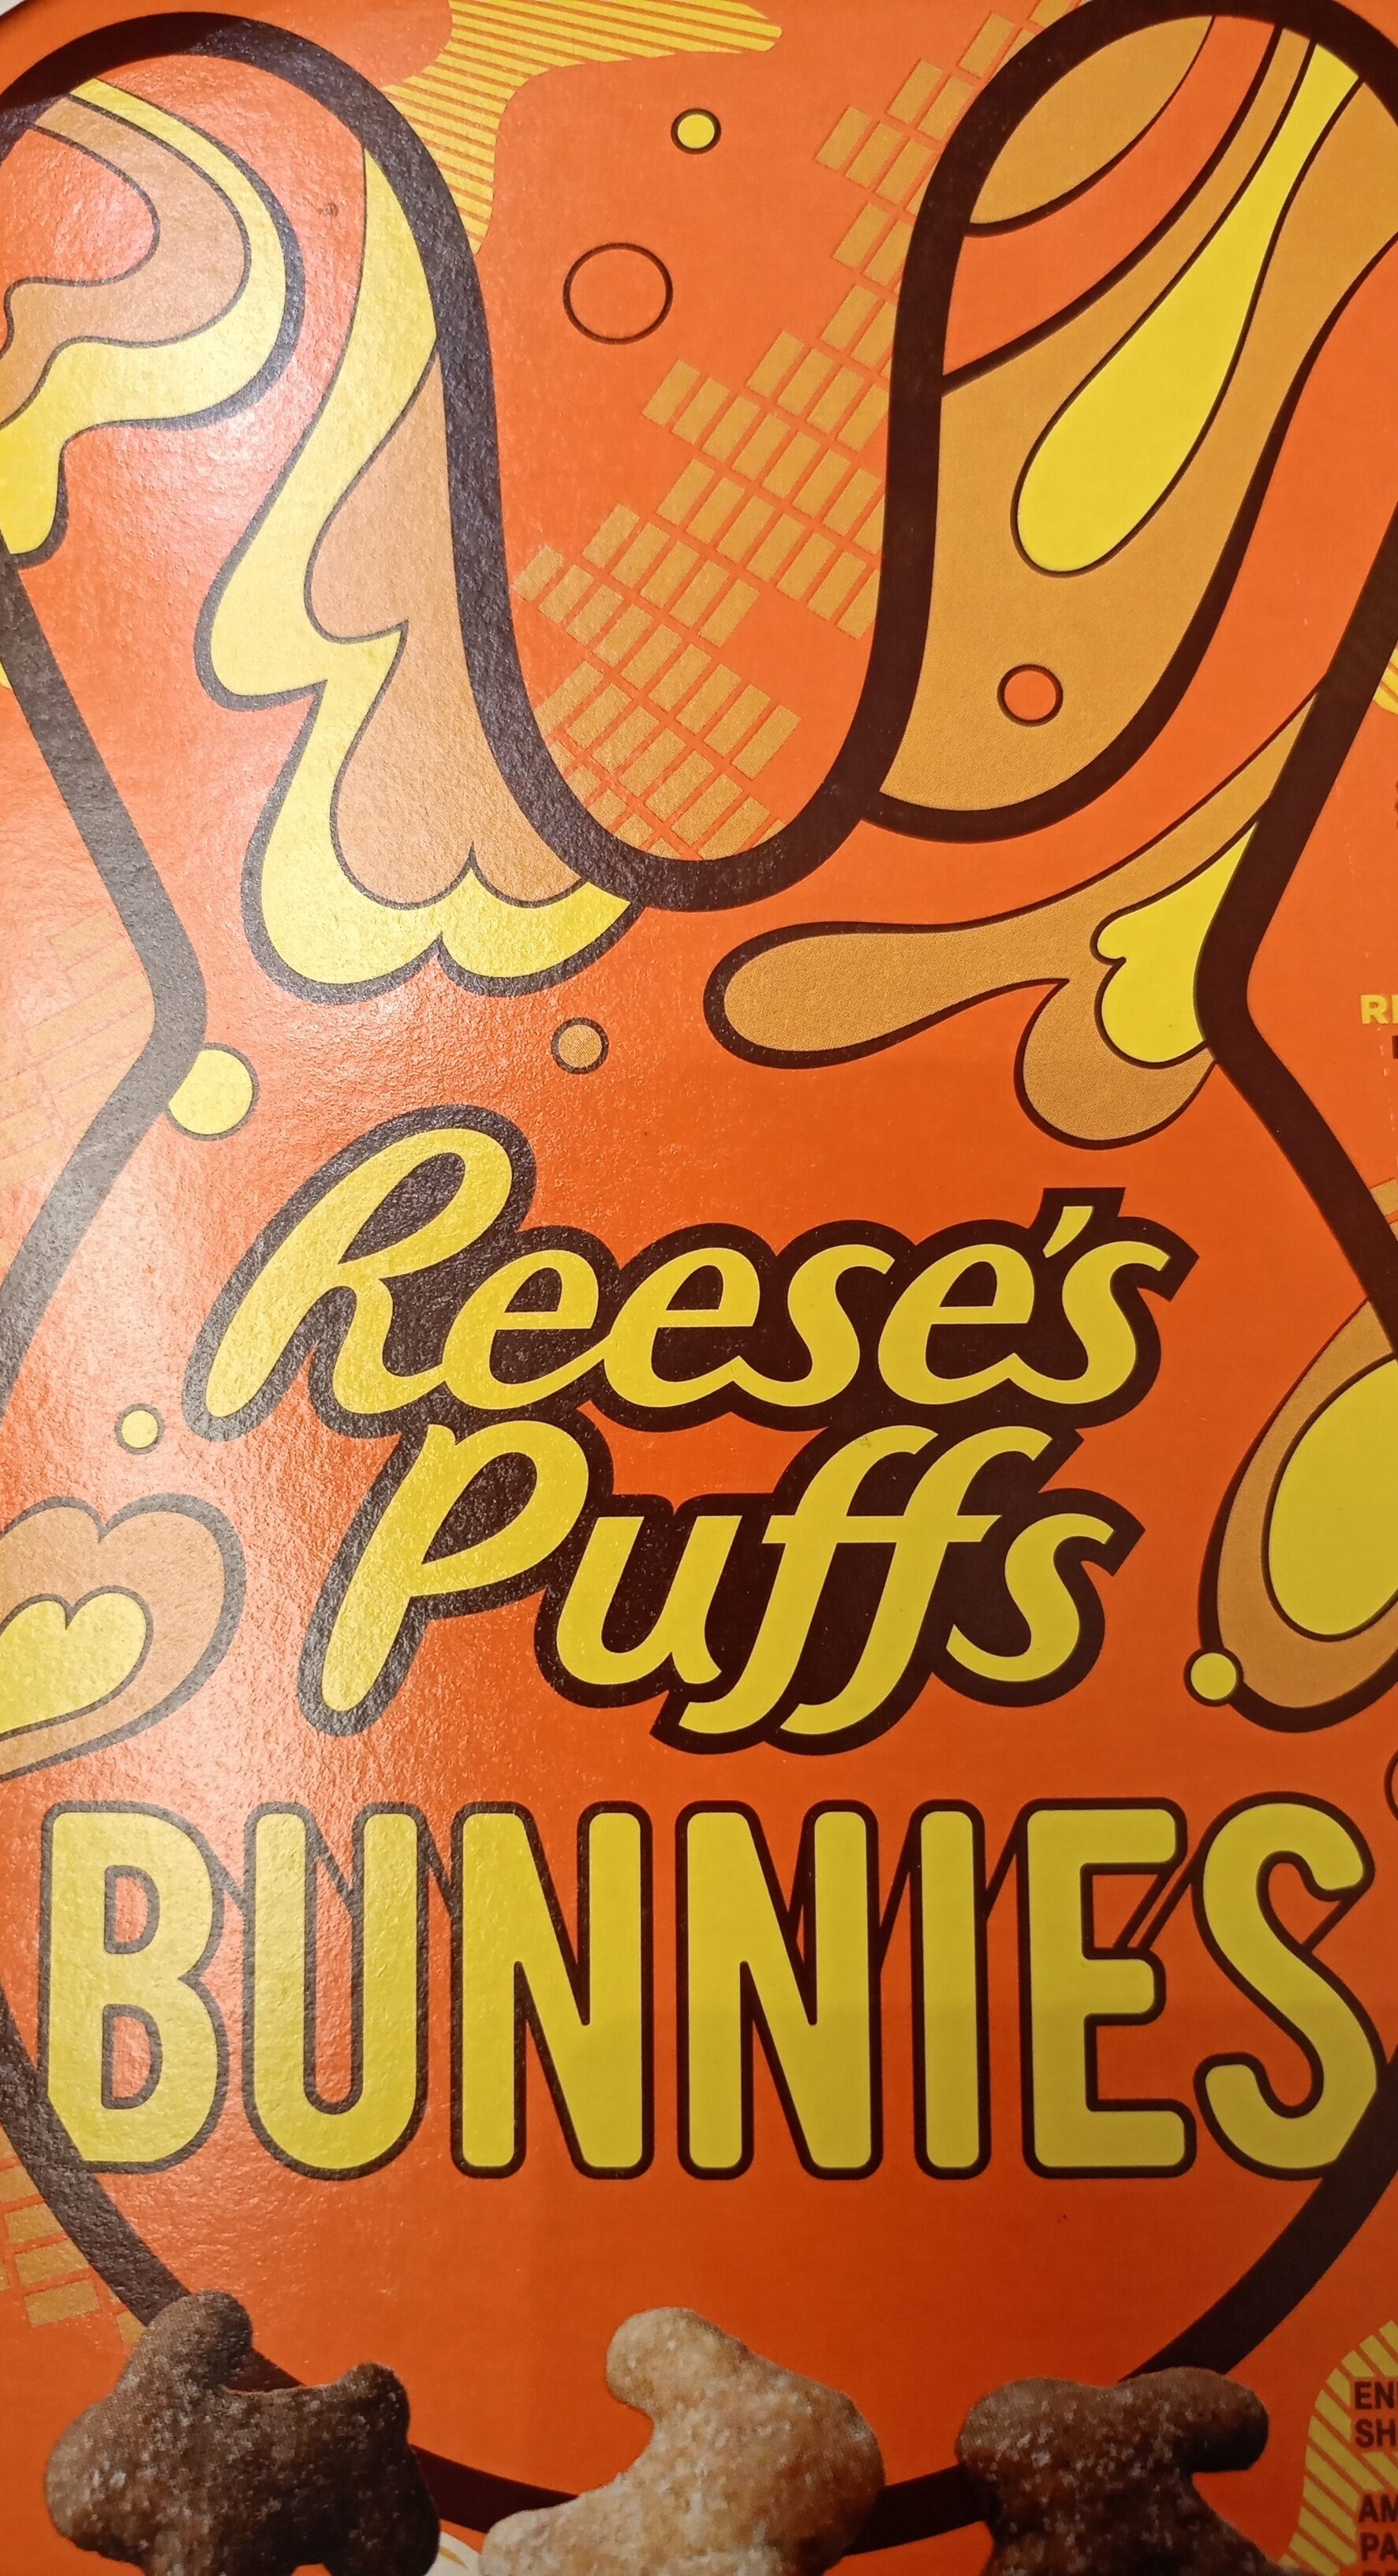 Puffs peanut butter bunnies sweet & crunchy corn puffs - Product